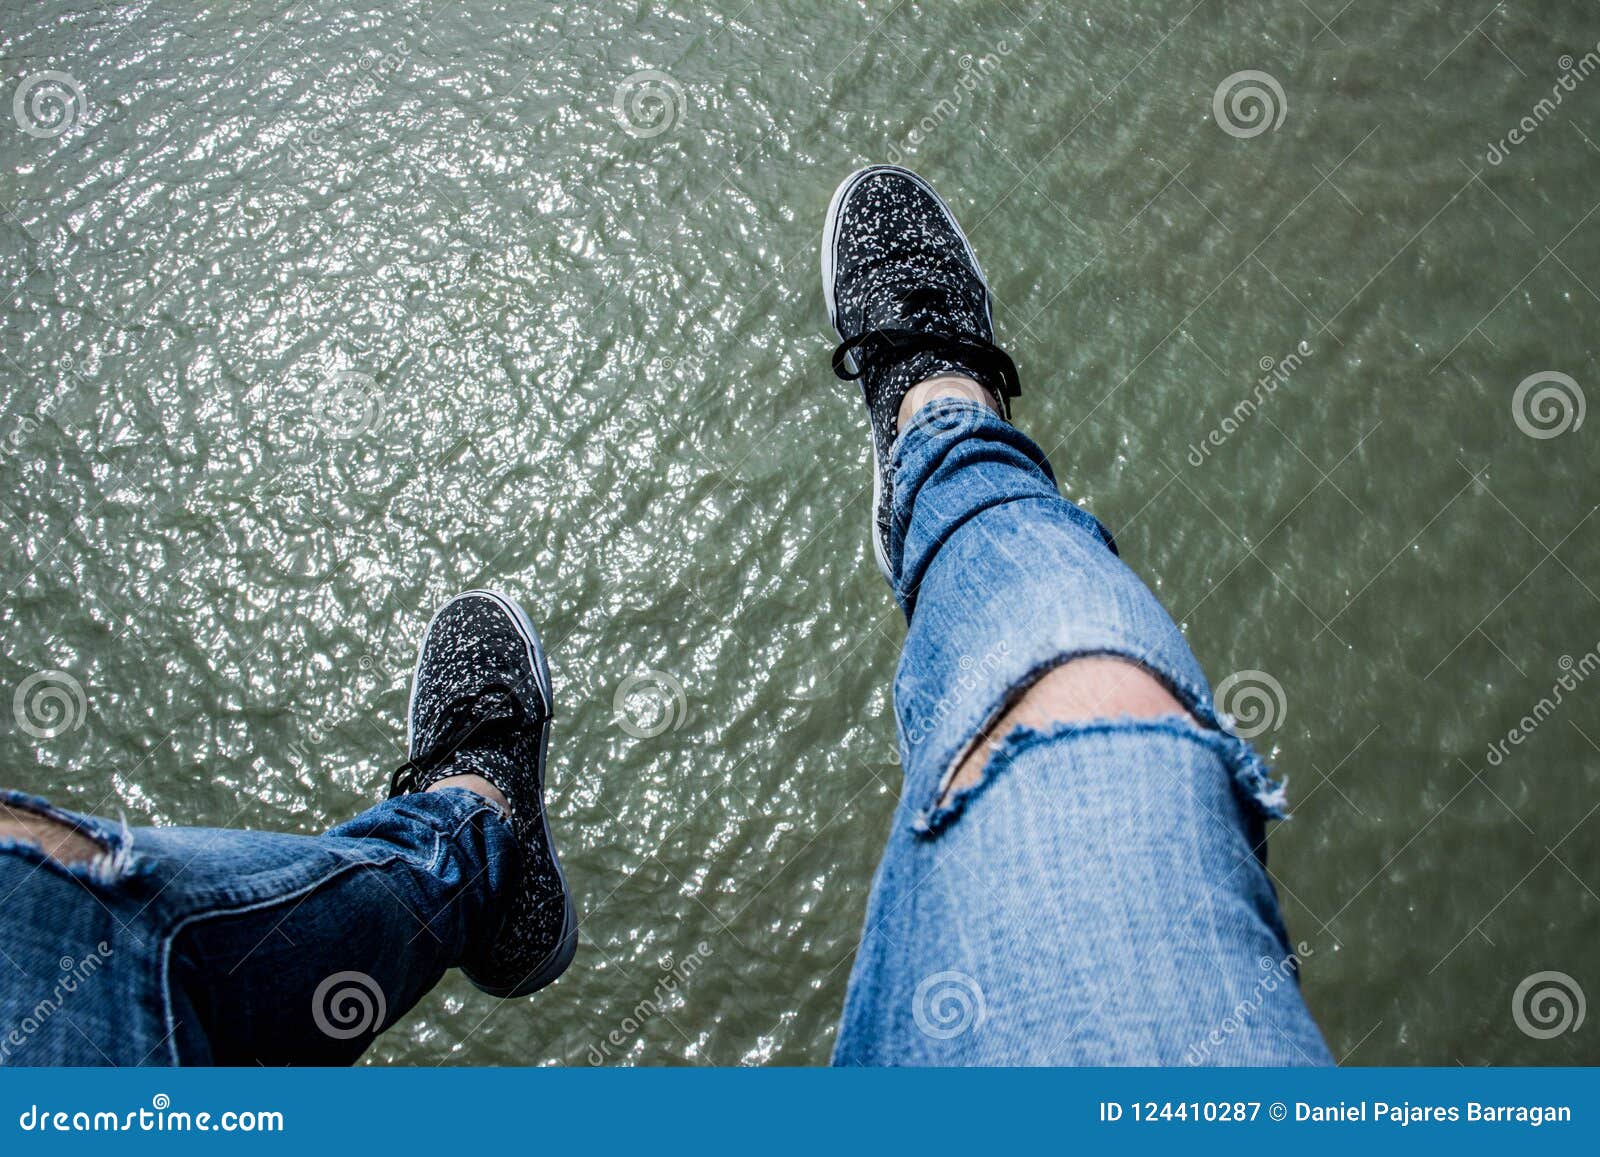 legs over water